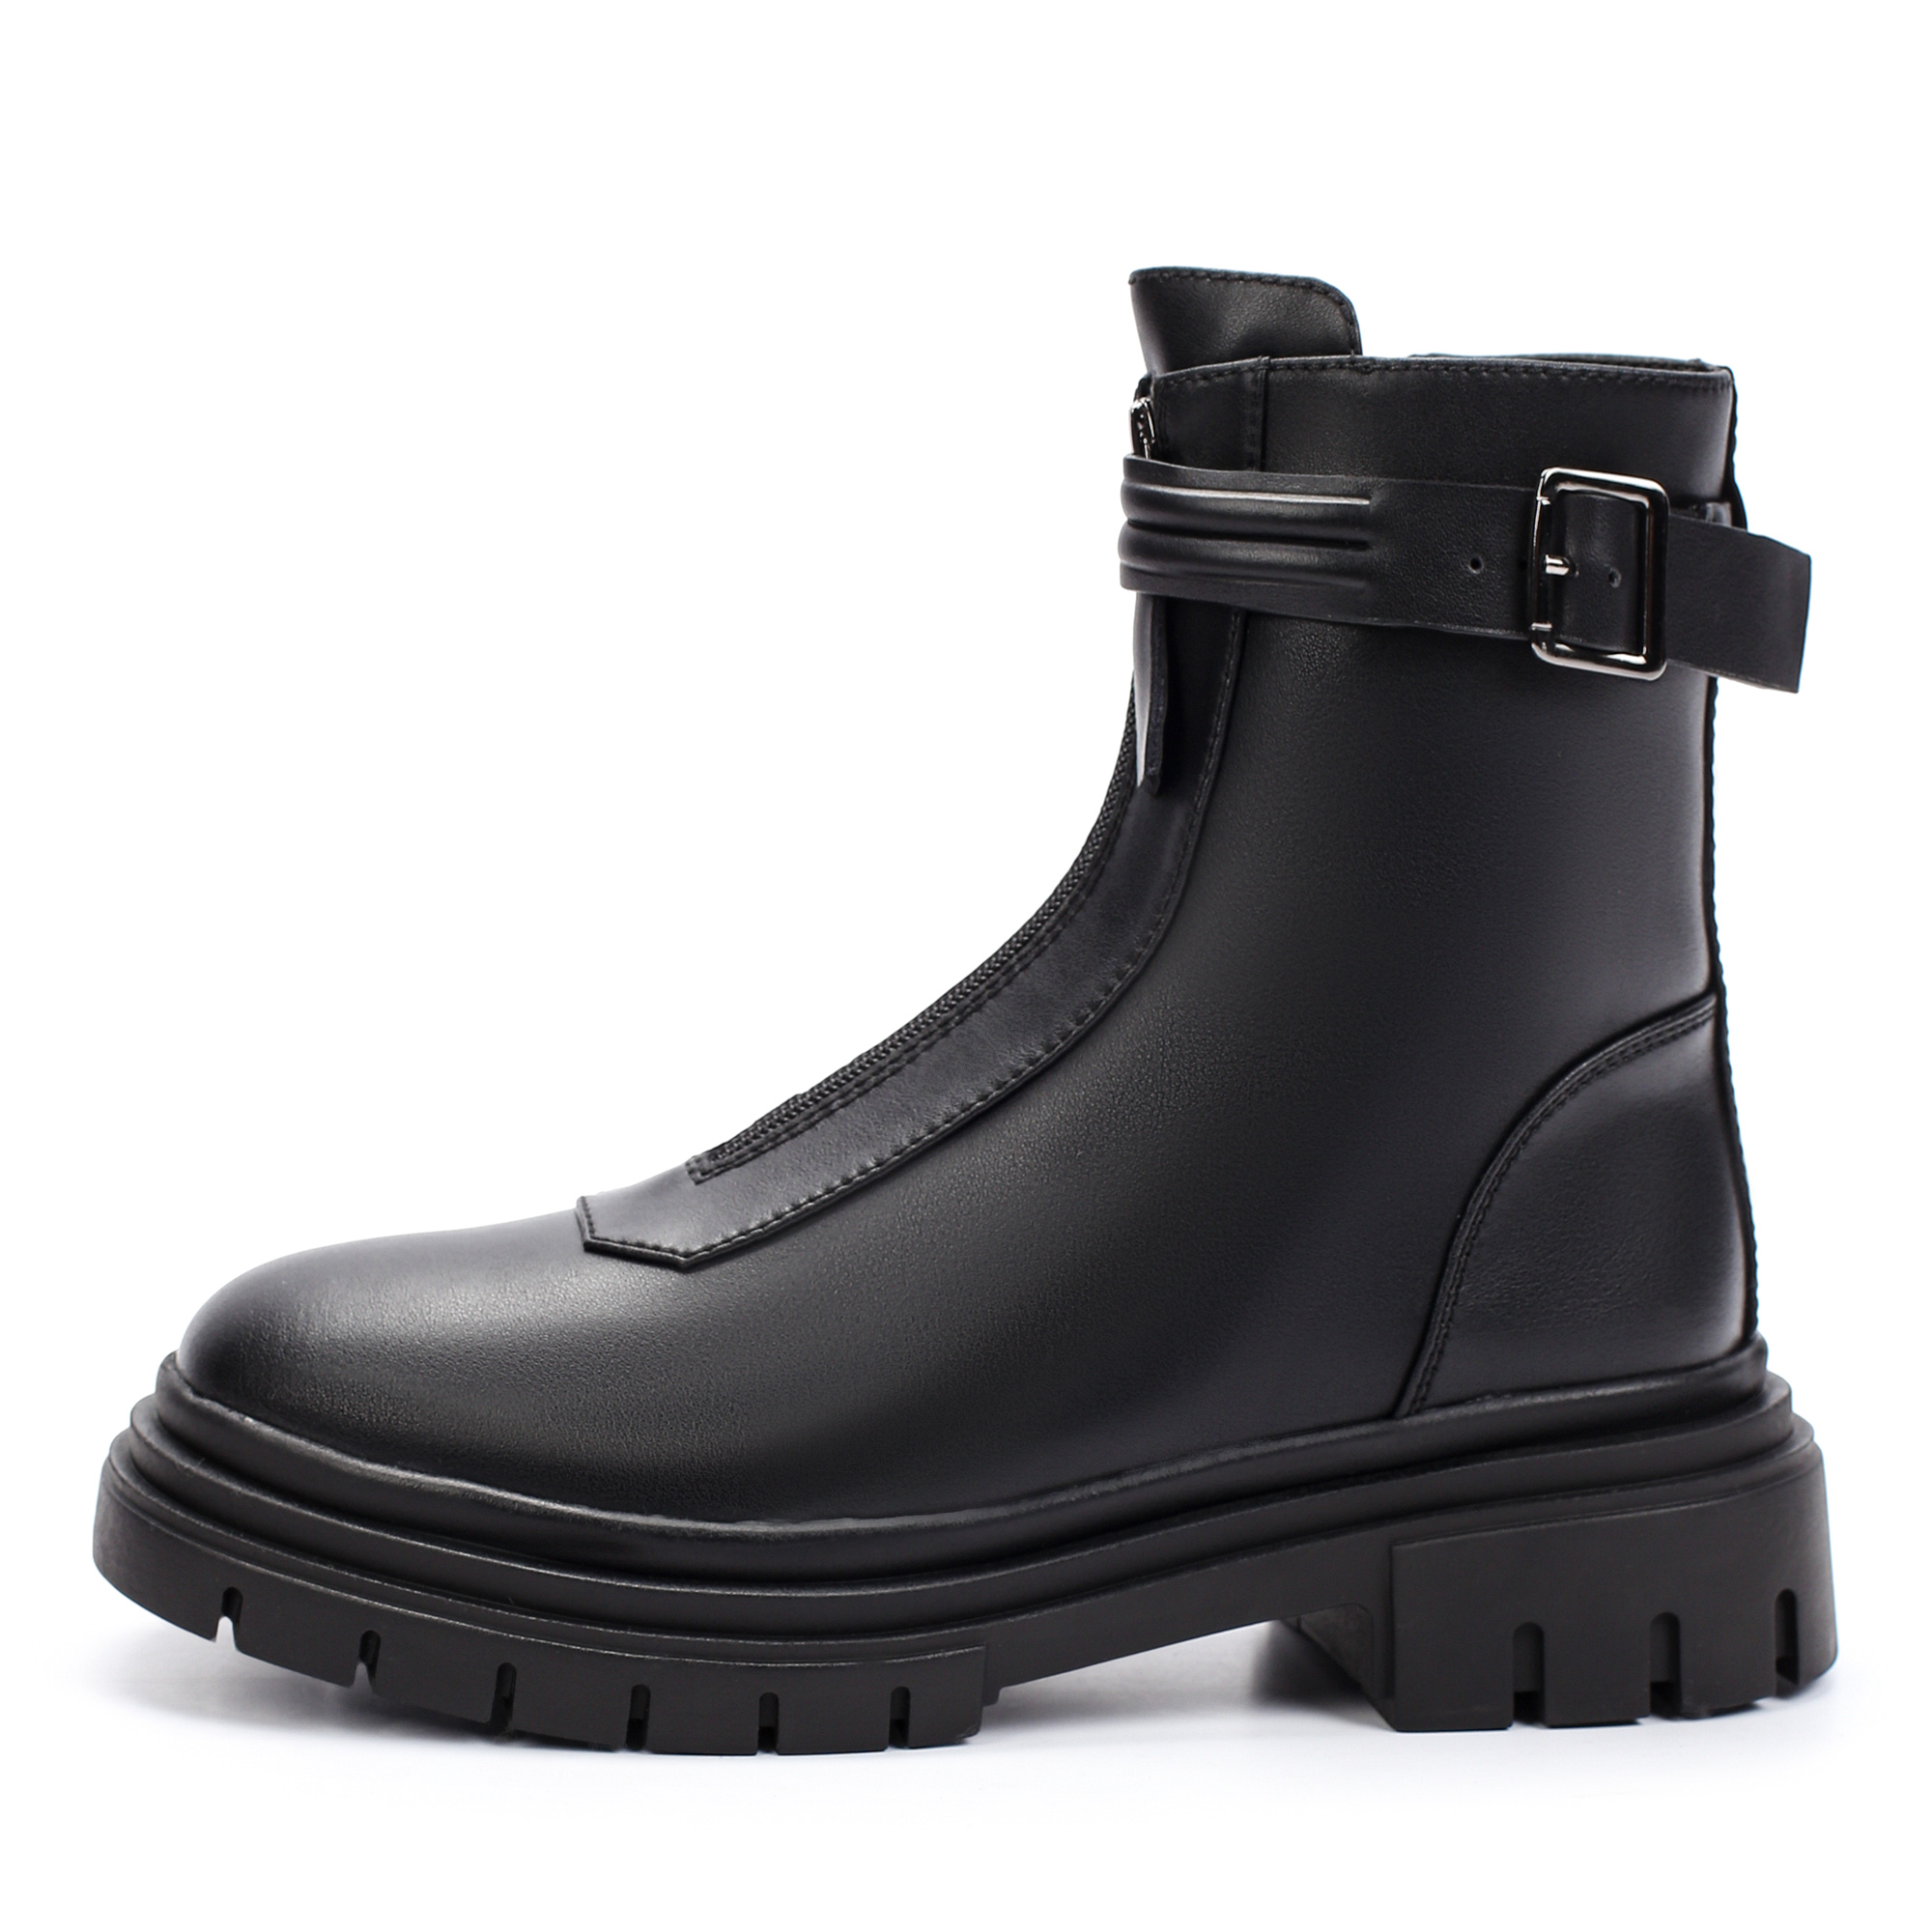 Ботинки Thomas Munz 021-012A-5602, цвет черный, размер 38